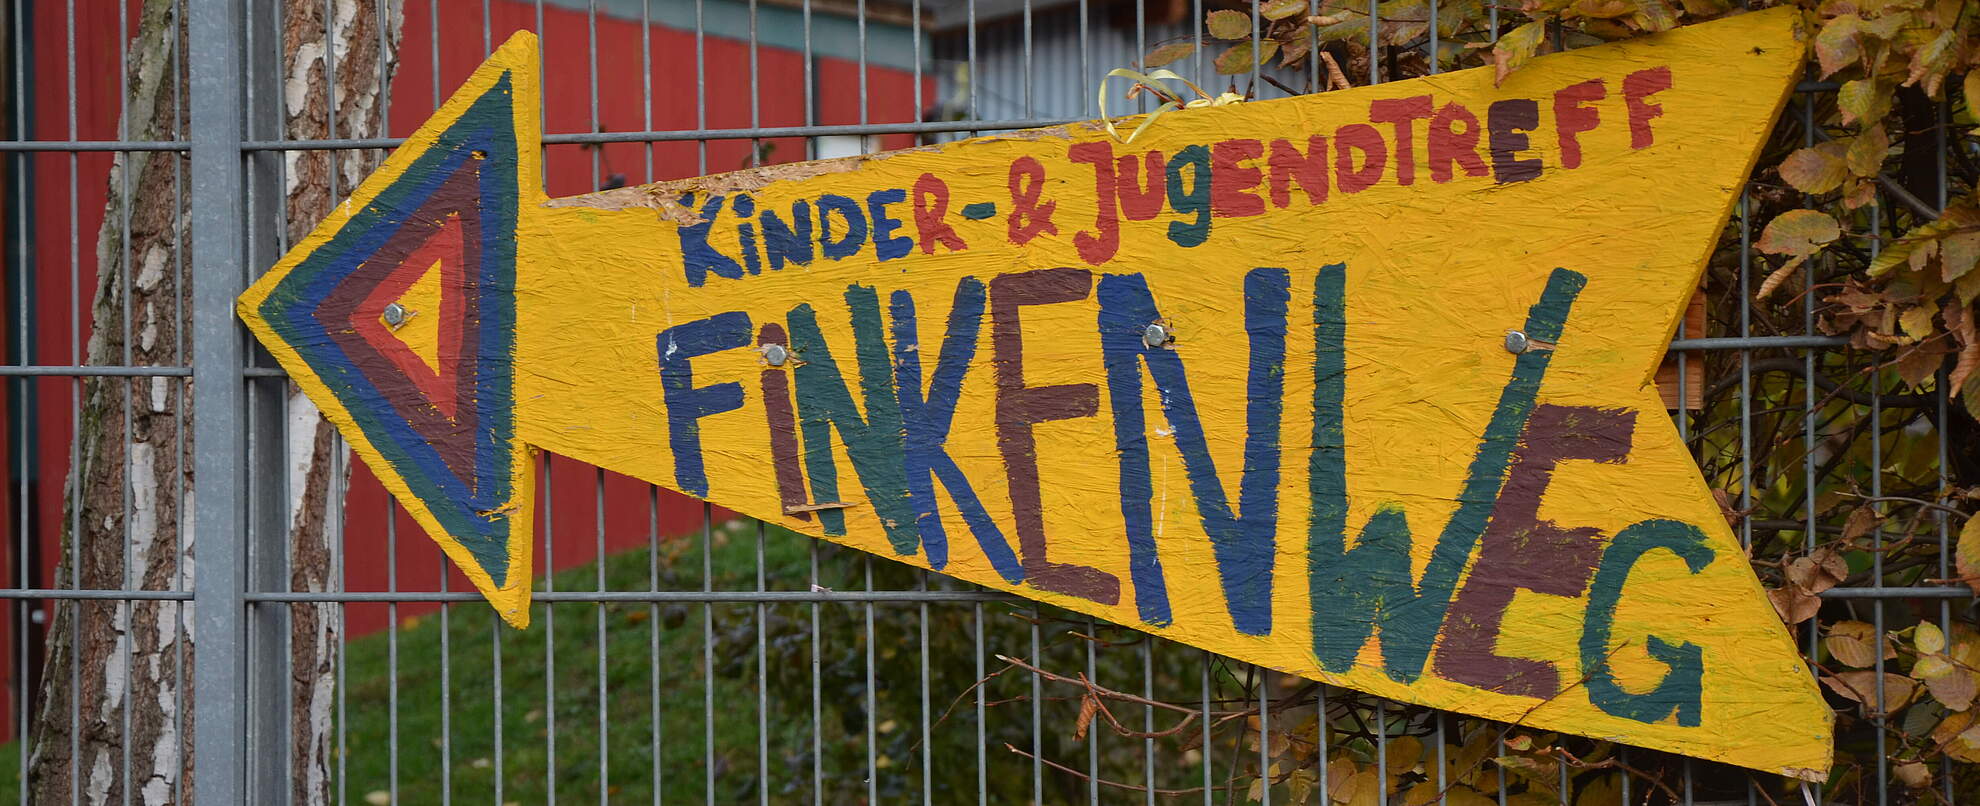 Kinder- und Jugendtreff Finkenweg